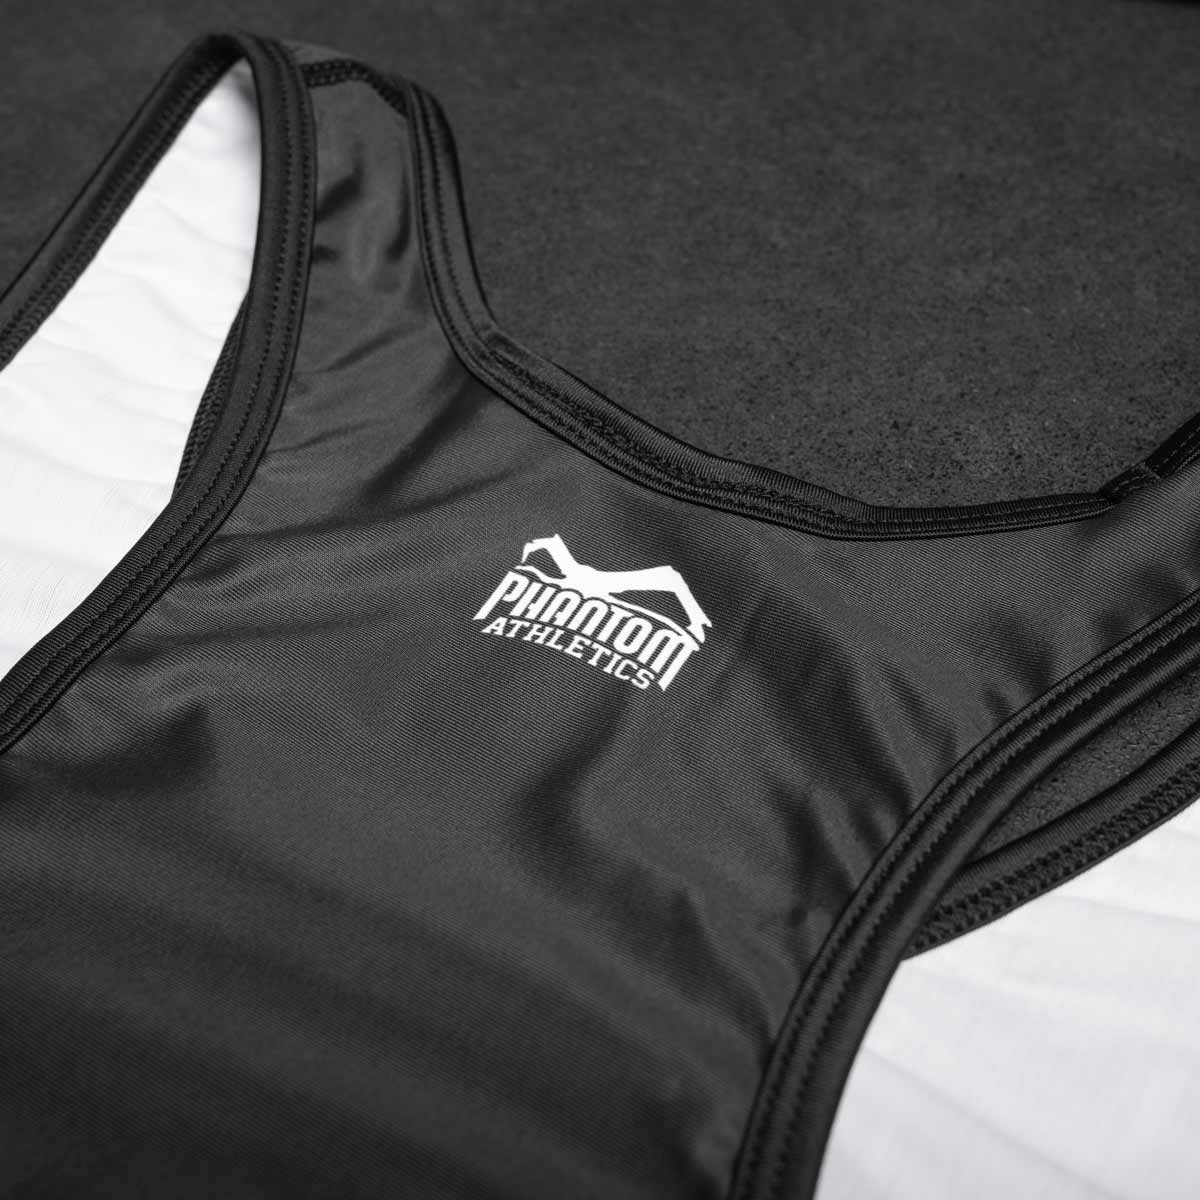 Phantom Ringertrikot Apex in der Farbe Schwarz. Ideal für dein Ringer Training. In hervorragender Passform und Haltbarkeit für Training und Wettkampf.